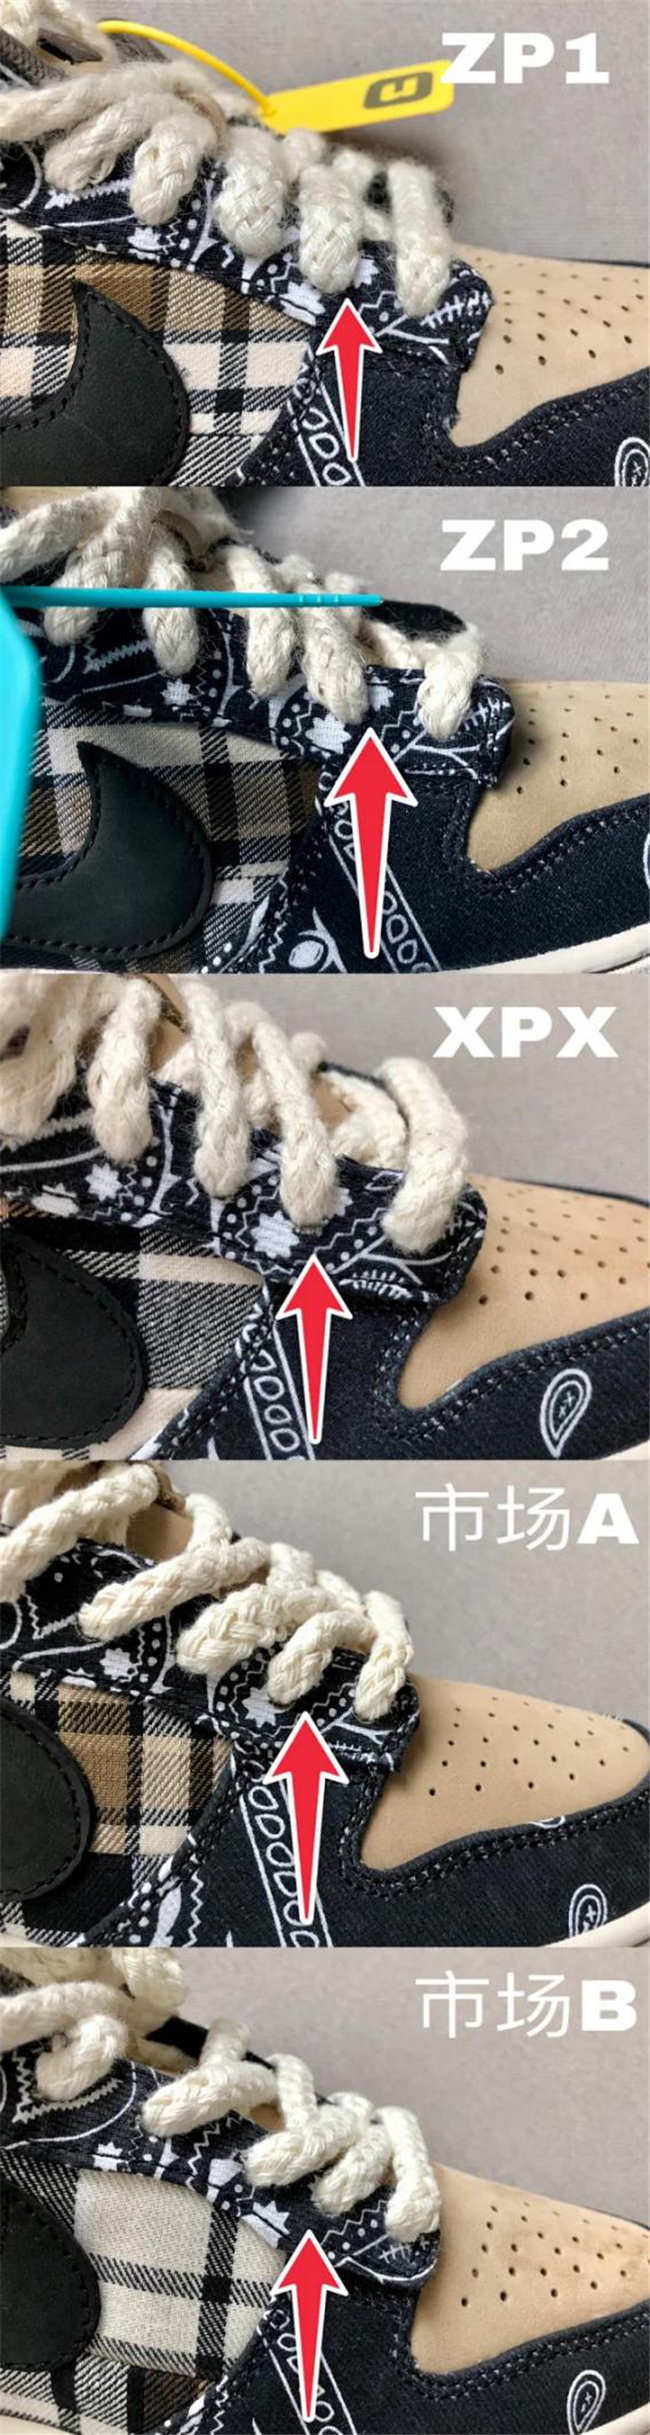 TS x Nike sb dunk low腰果花真假對比 特殊鞋盒真偽